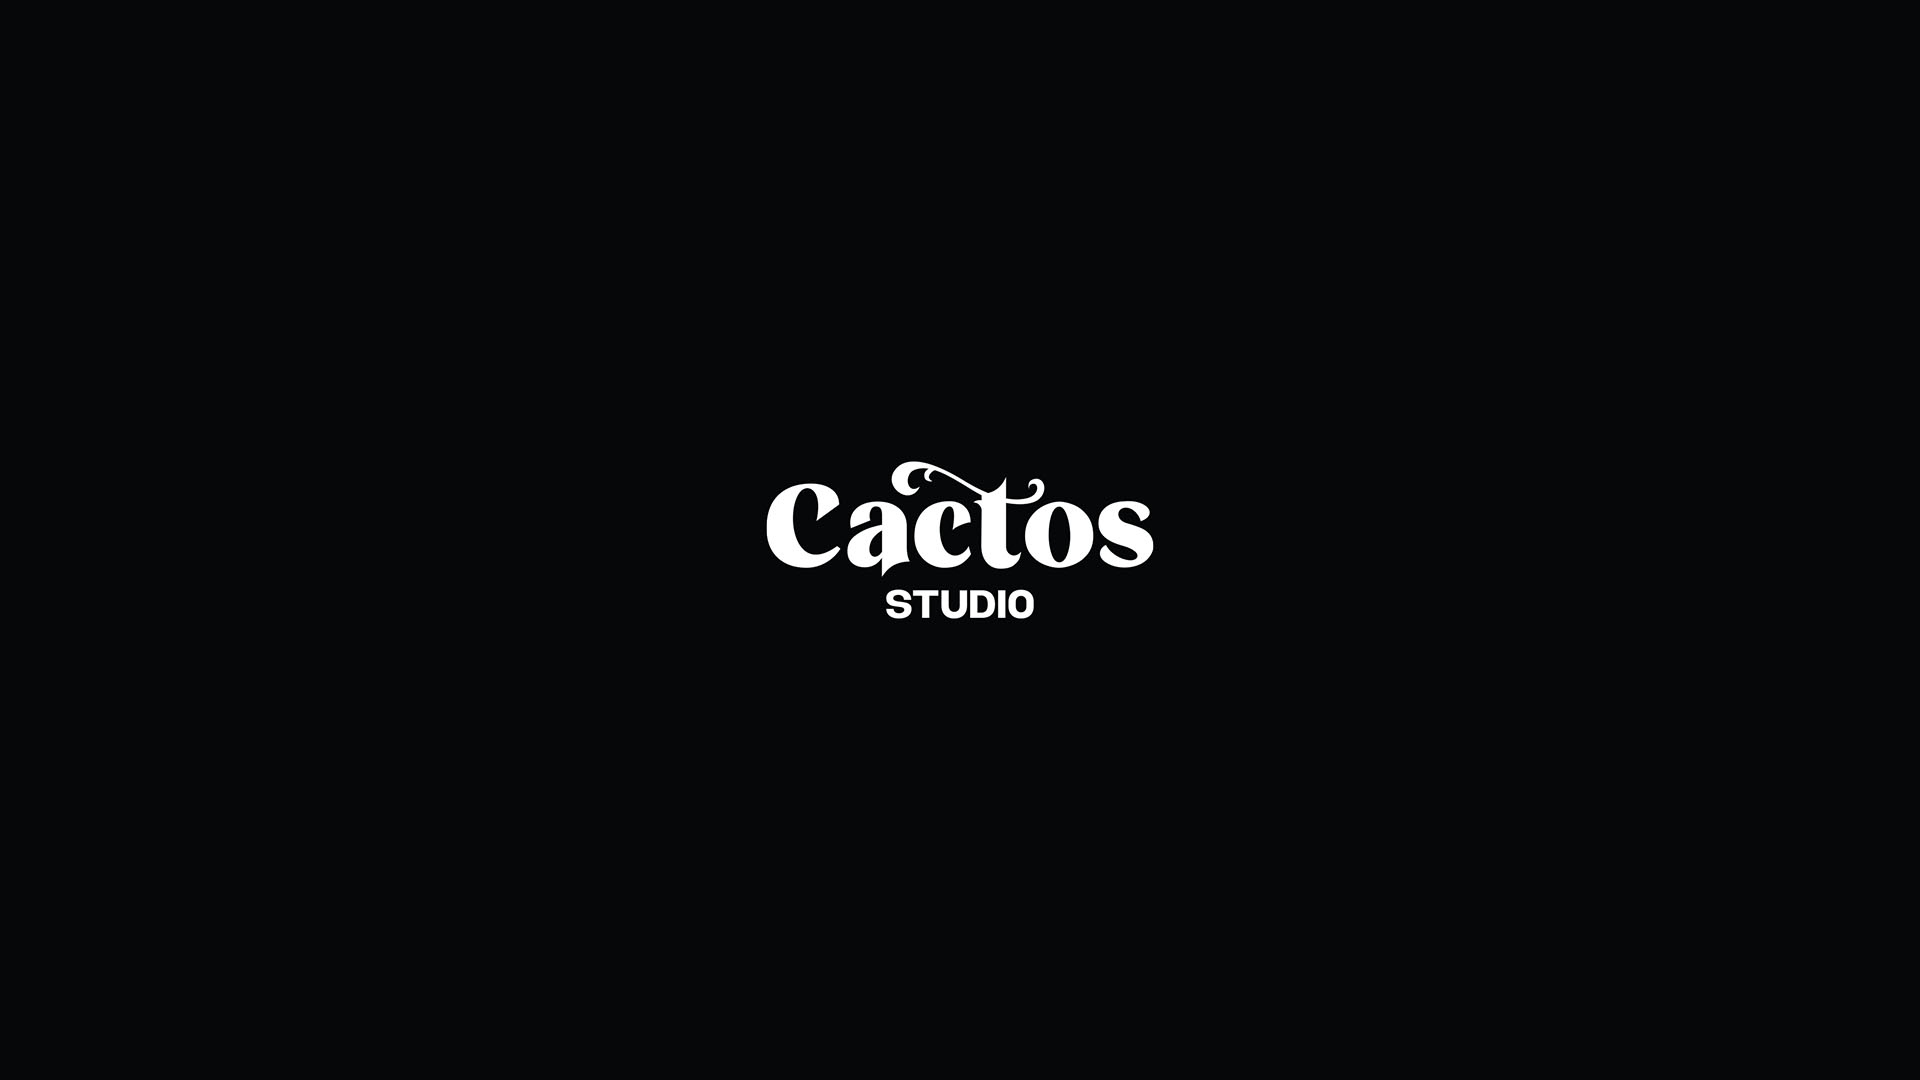 Cactos Studio Brand Design